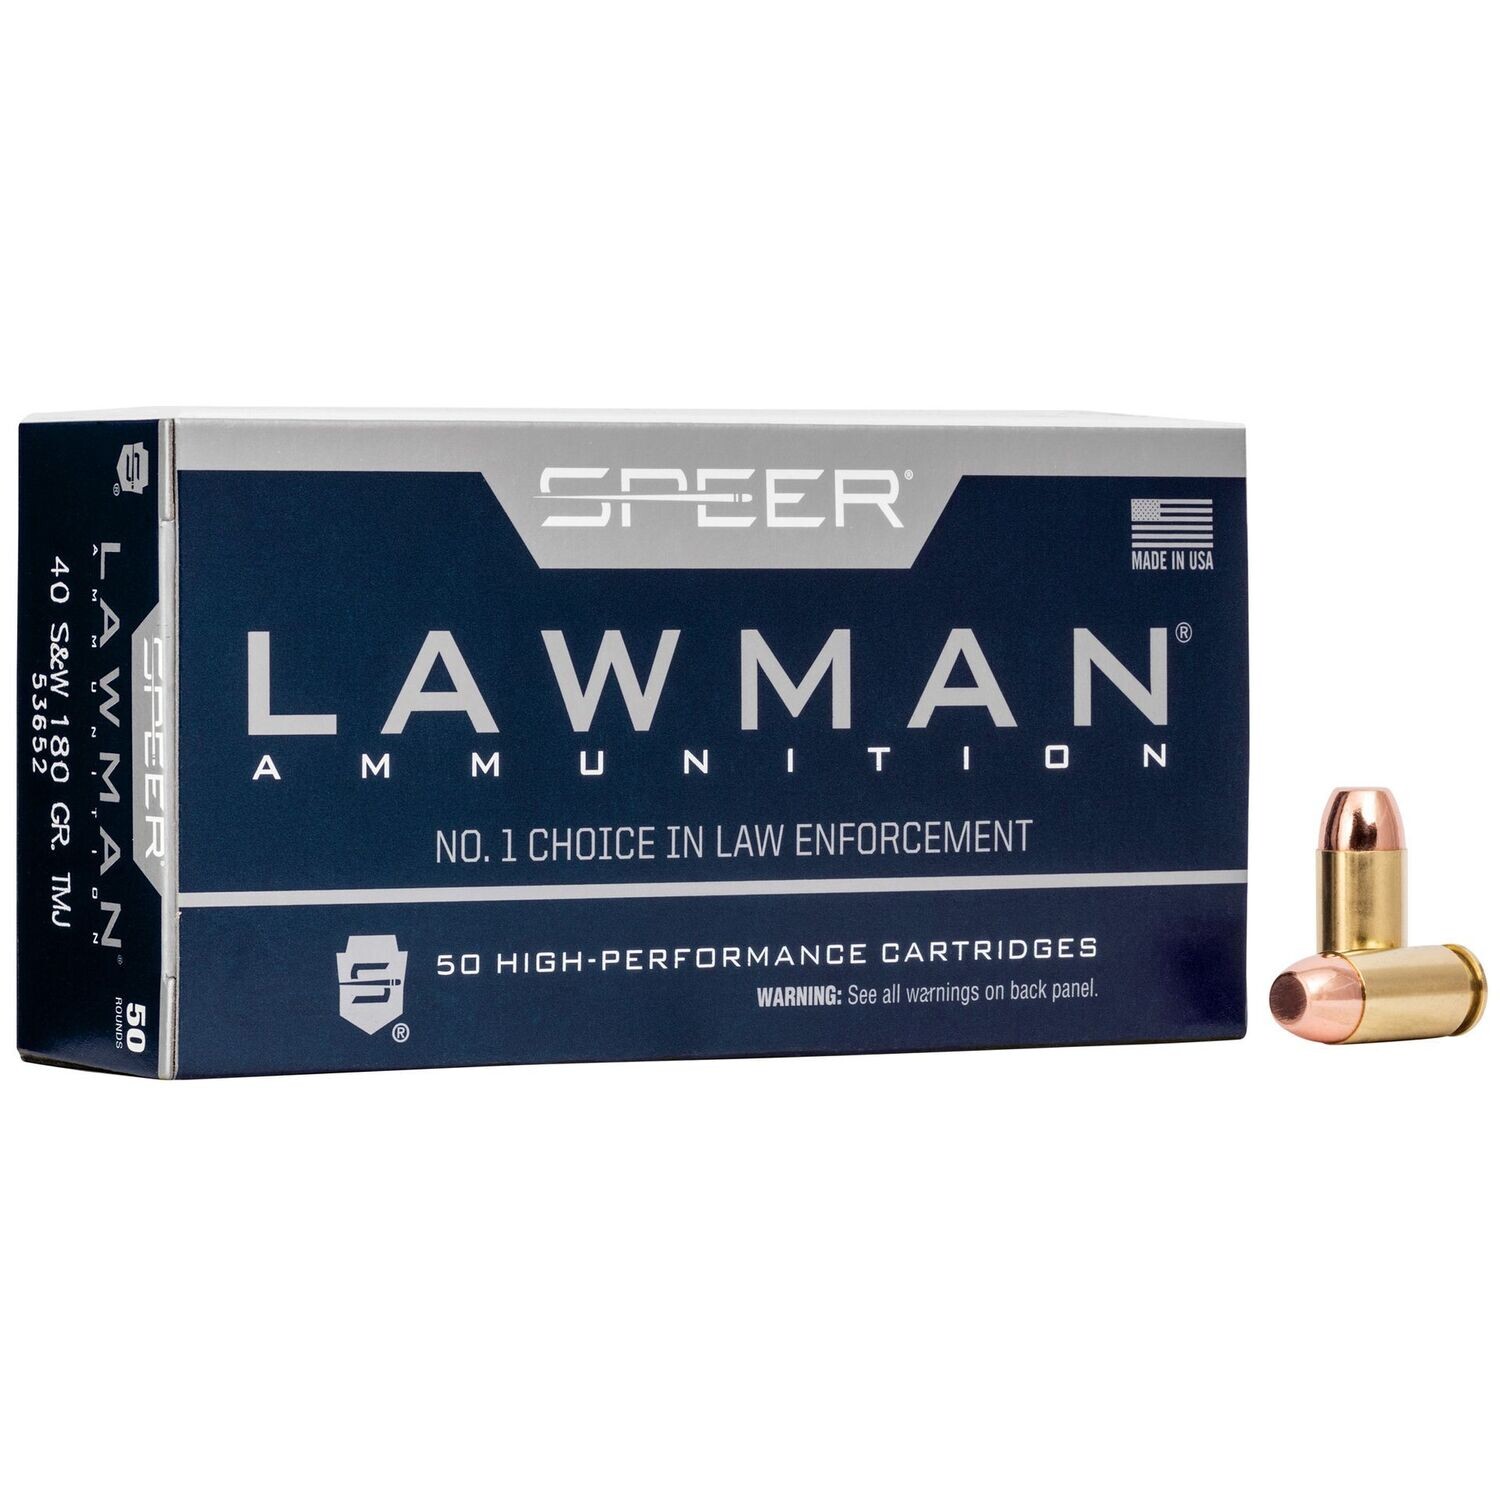 Speer Ammunition, Speer Lawman, 40S&W, 165 Grain, Total Metal Jacket, 50 Round Box